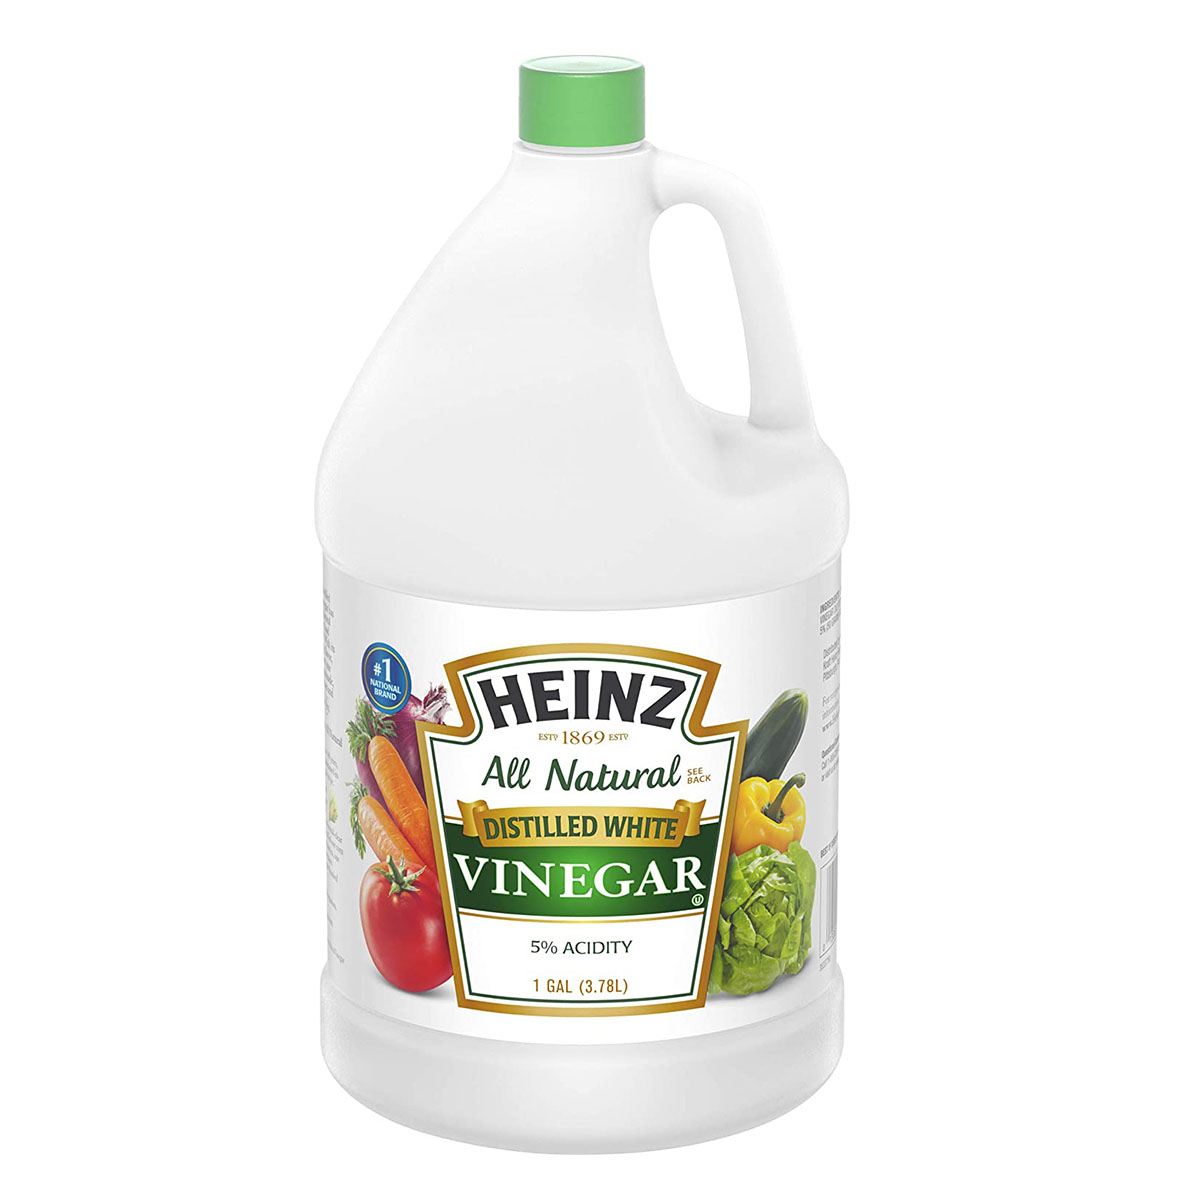 Best Fabric Softener Options: Heinz White Vinegar